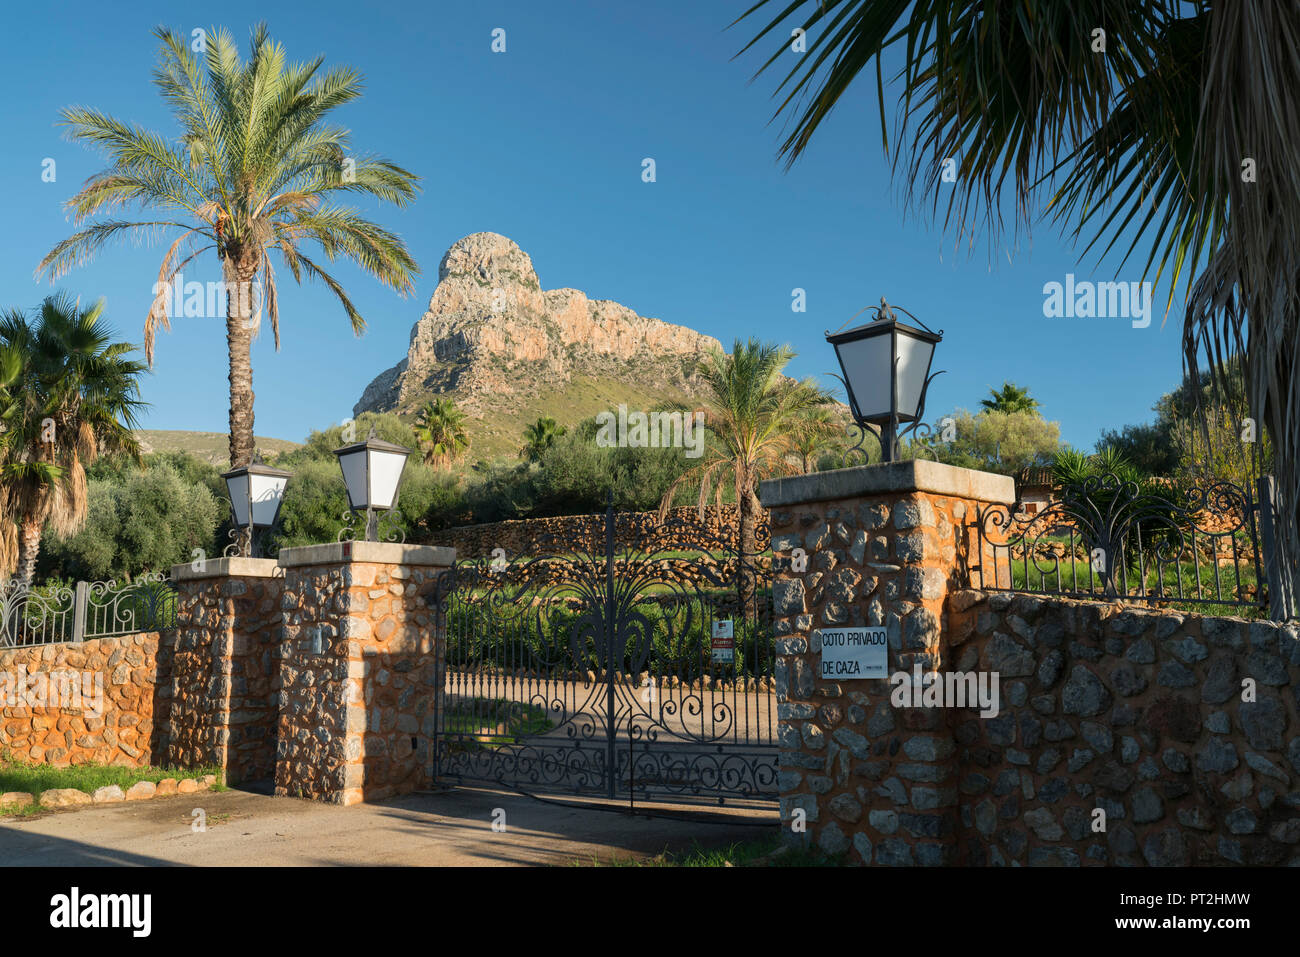 Entrée d'une finca, monter, Ferritx Betlem, Majorque, Îles Baléares, Espagne Banque D'Images